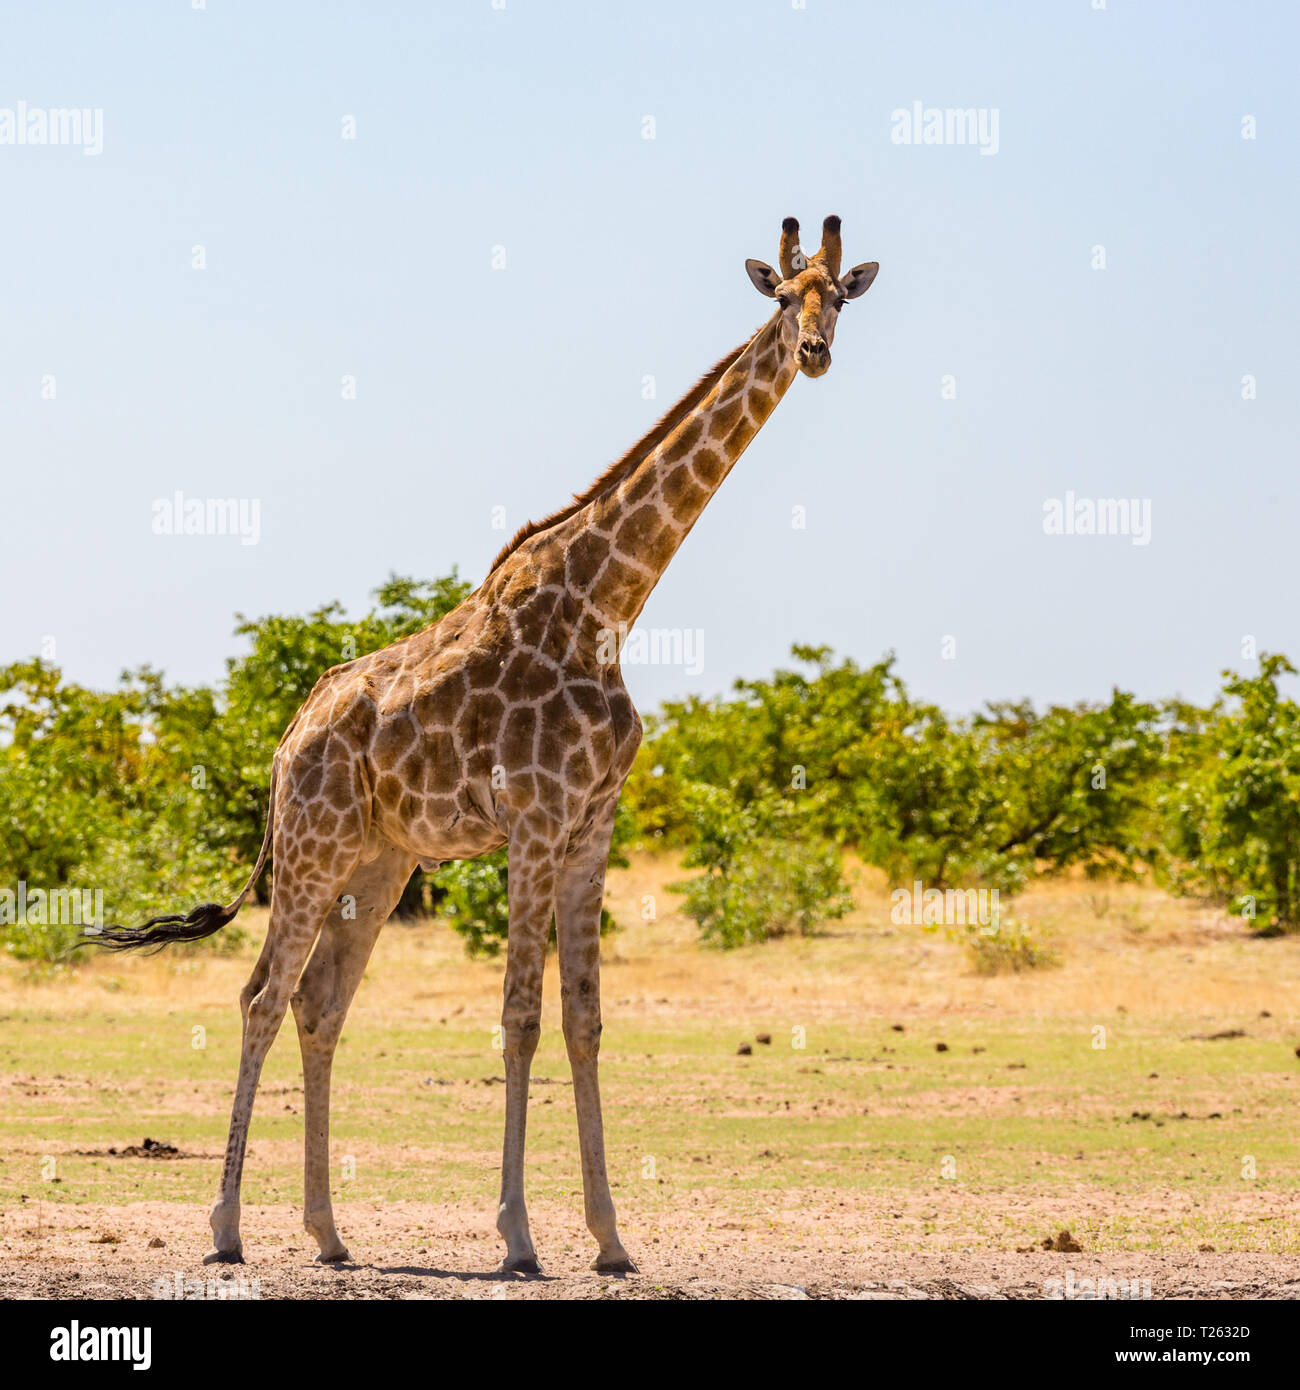 Una jirafa macho natural de pie en la sabana con arbustos, Sunshine Foto de stock